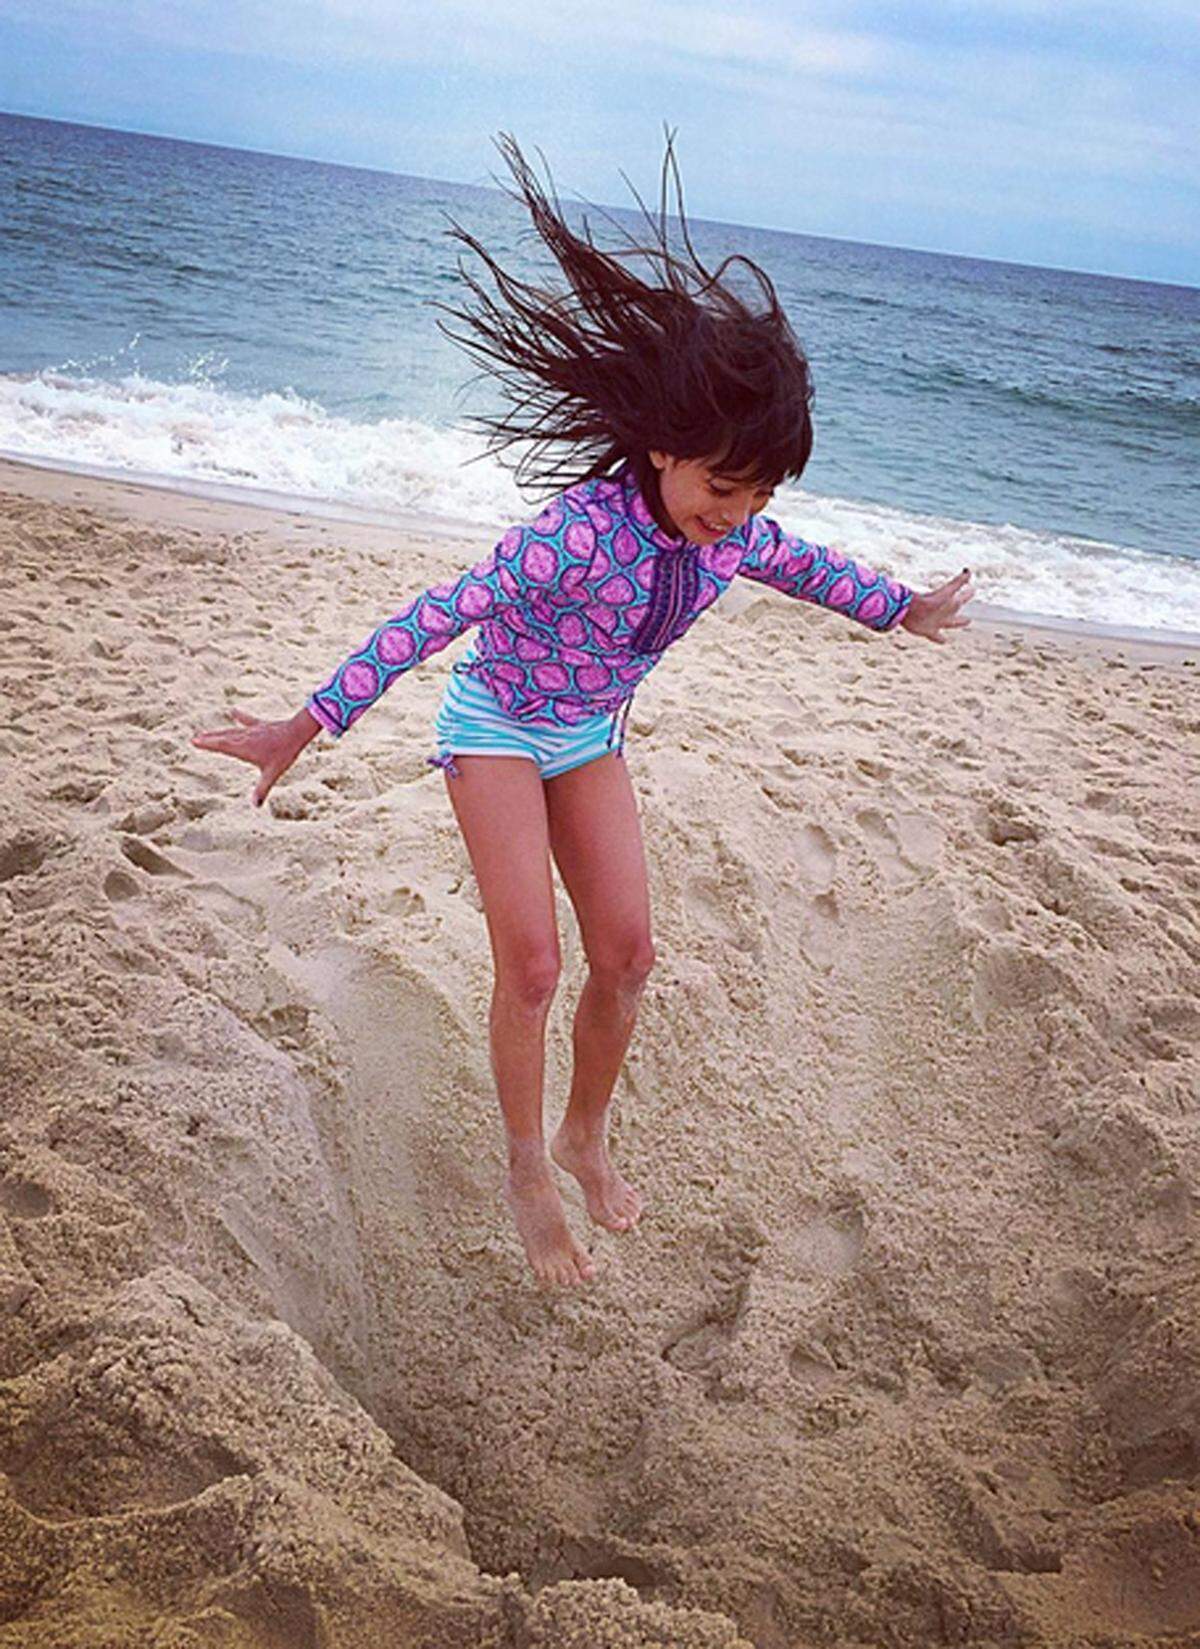 Natürlich sollen sich Kinder am Strand austoben können und ihren Spaß haben. Andere Gäste zu stören, indem etwa mit Sand geworfen wird, sollte aber von den Eltern unterbunden werden. Das finden zumindest 38 Prozent der Befragten.